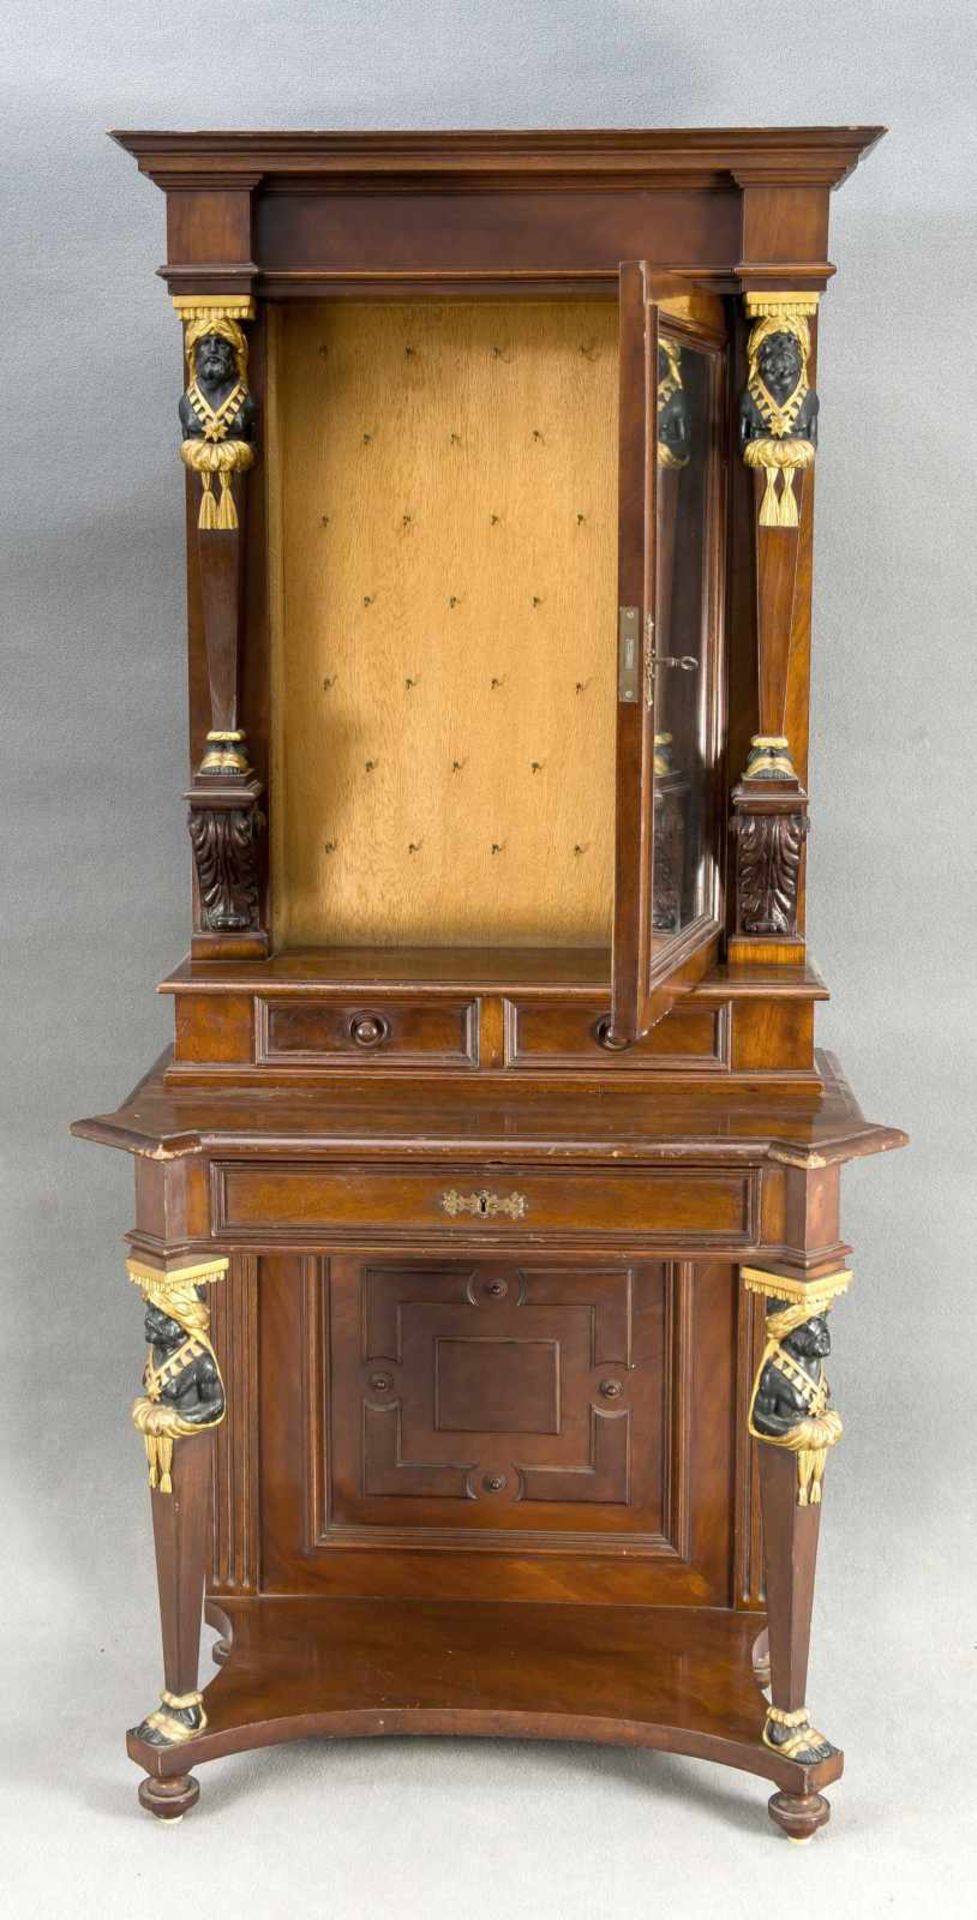 Dekorative Gründerzeit-Konsole mit Spiegeltür, um 1880, Mahagoni furniert/massiv, auf hohen Beinen - Bild 2 aus 2